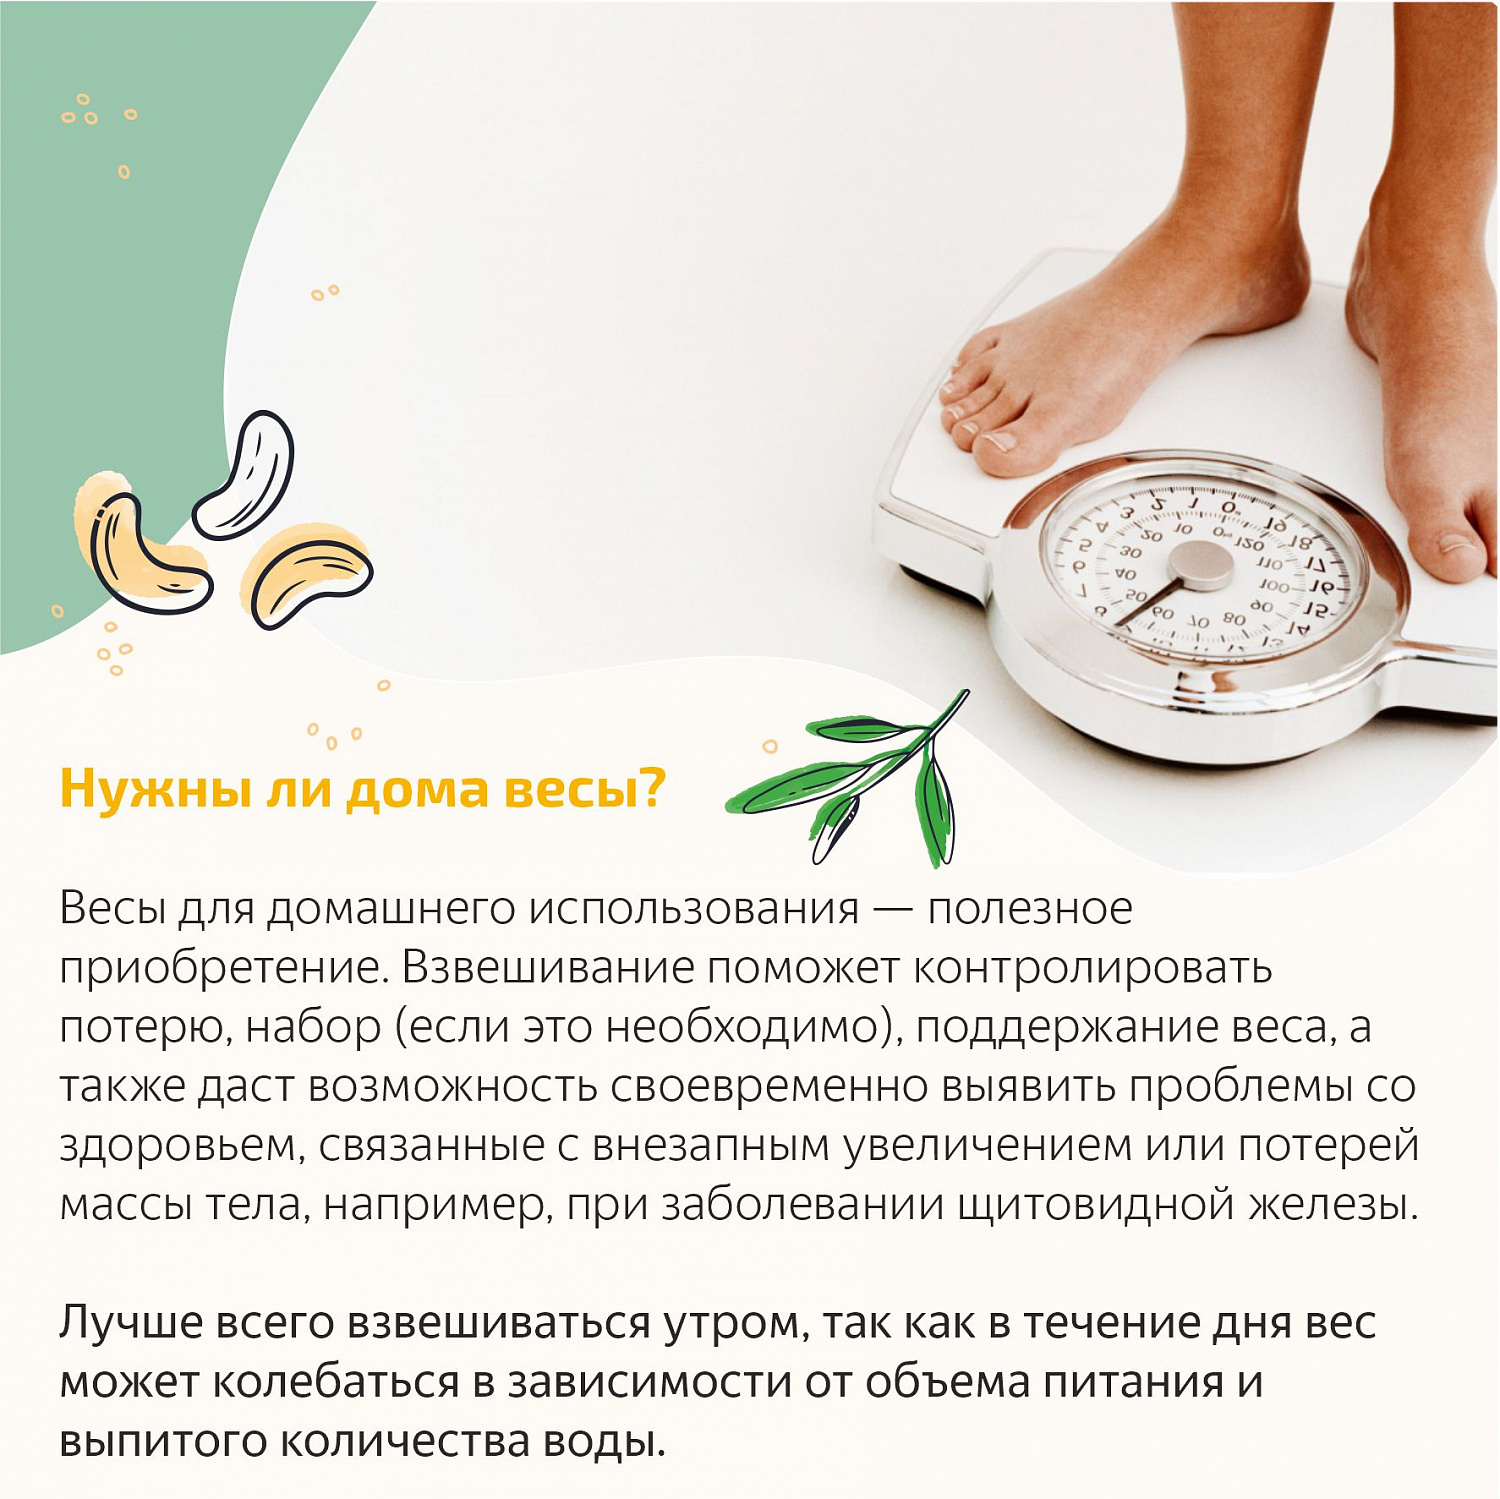 Министерство здравоохранения РФ с 21 по 27 ноября 2022 года проводит неделю популяризации подсчета калорий (в честь Дня против ожирения - 26 ноября)